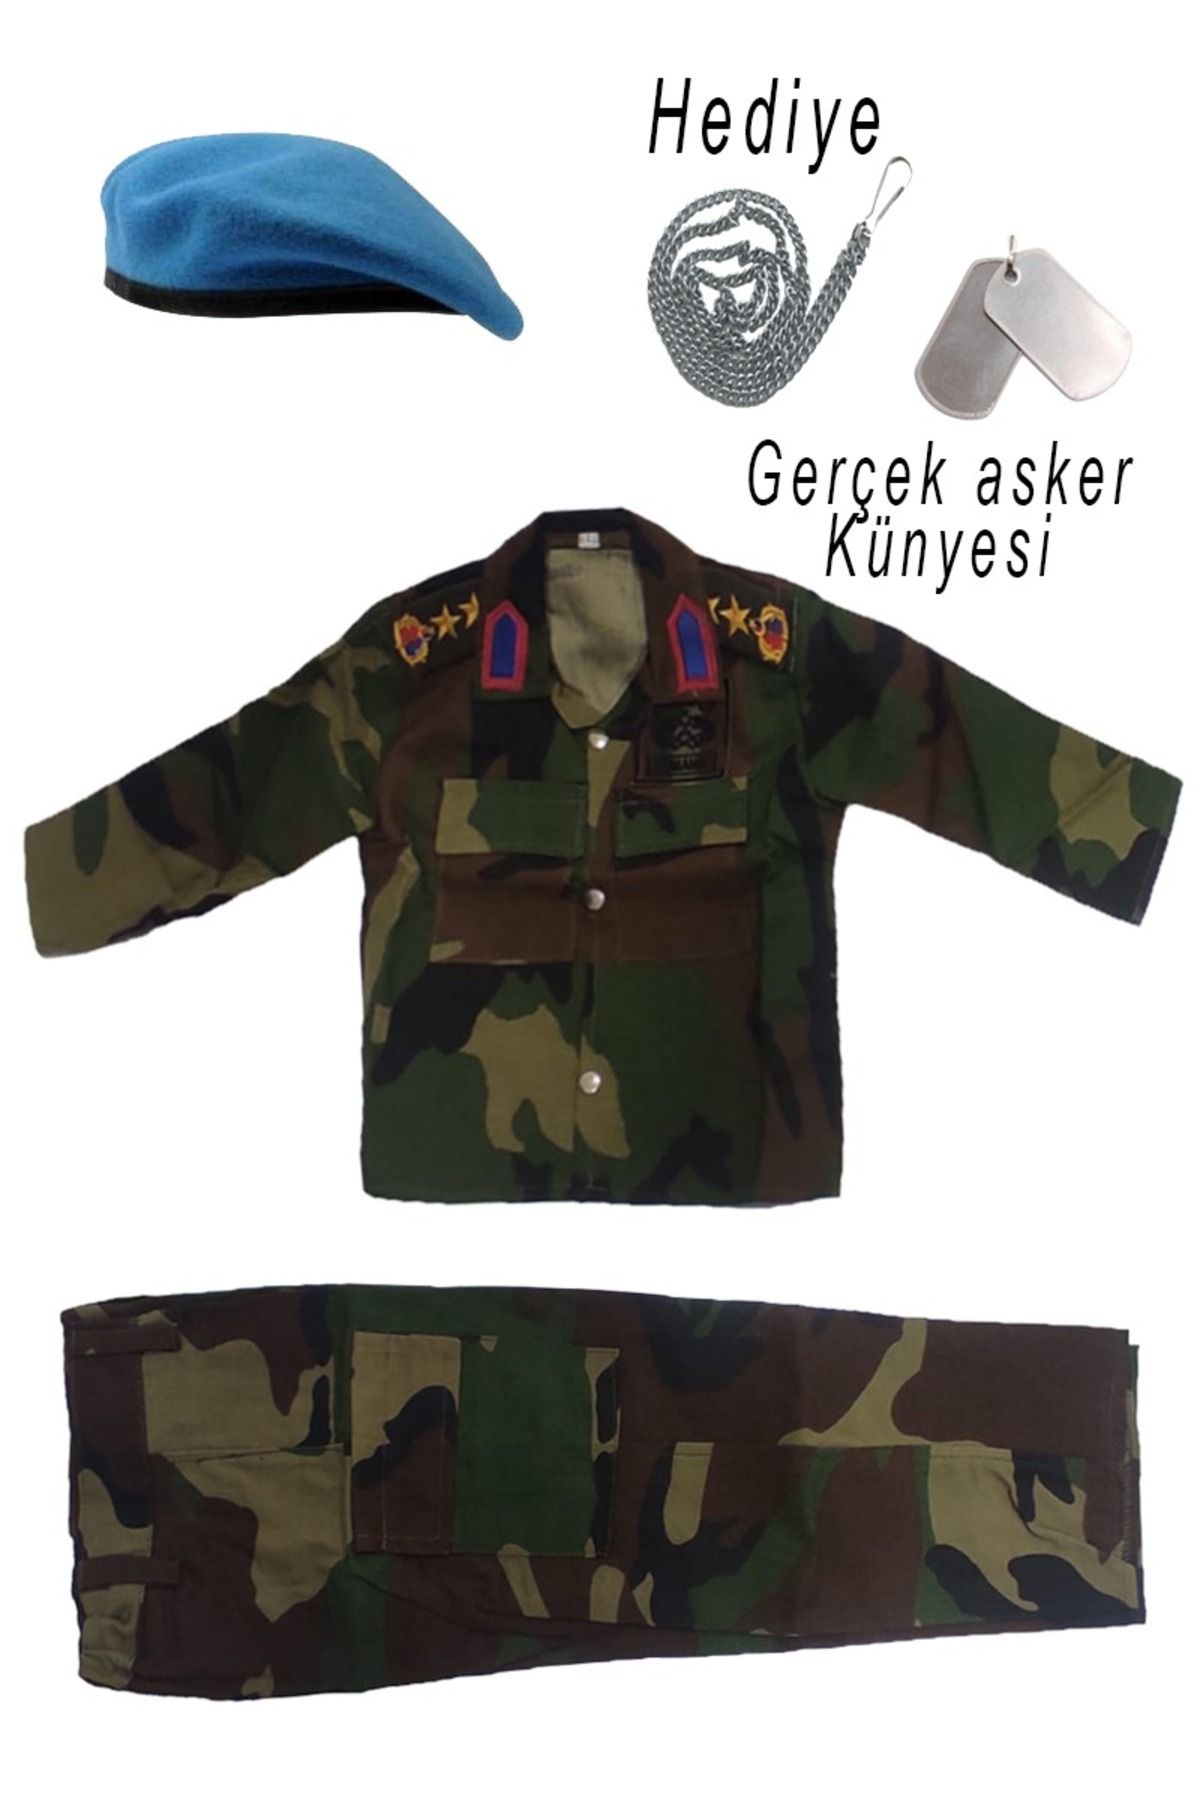 SİNGLE SWORD Çocuk Asker Kostümü - komando Çocuk Asker gömlekli Kamuflaj Takım - Gerçek Asker Künyesi Hediyeli